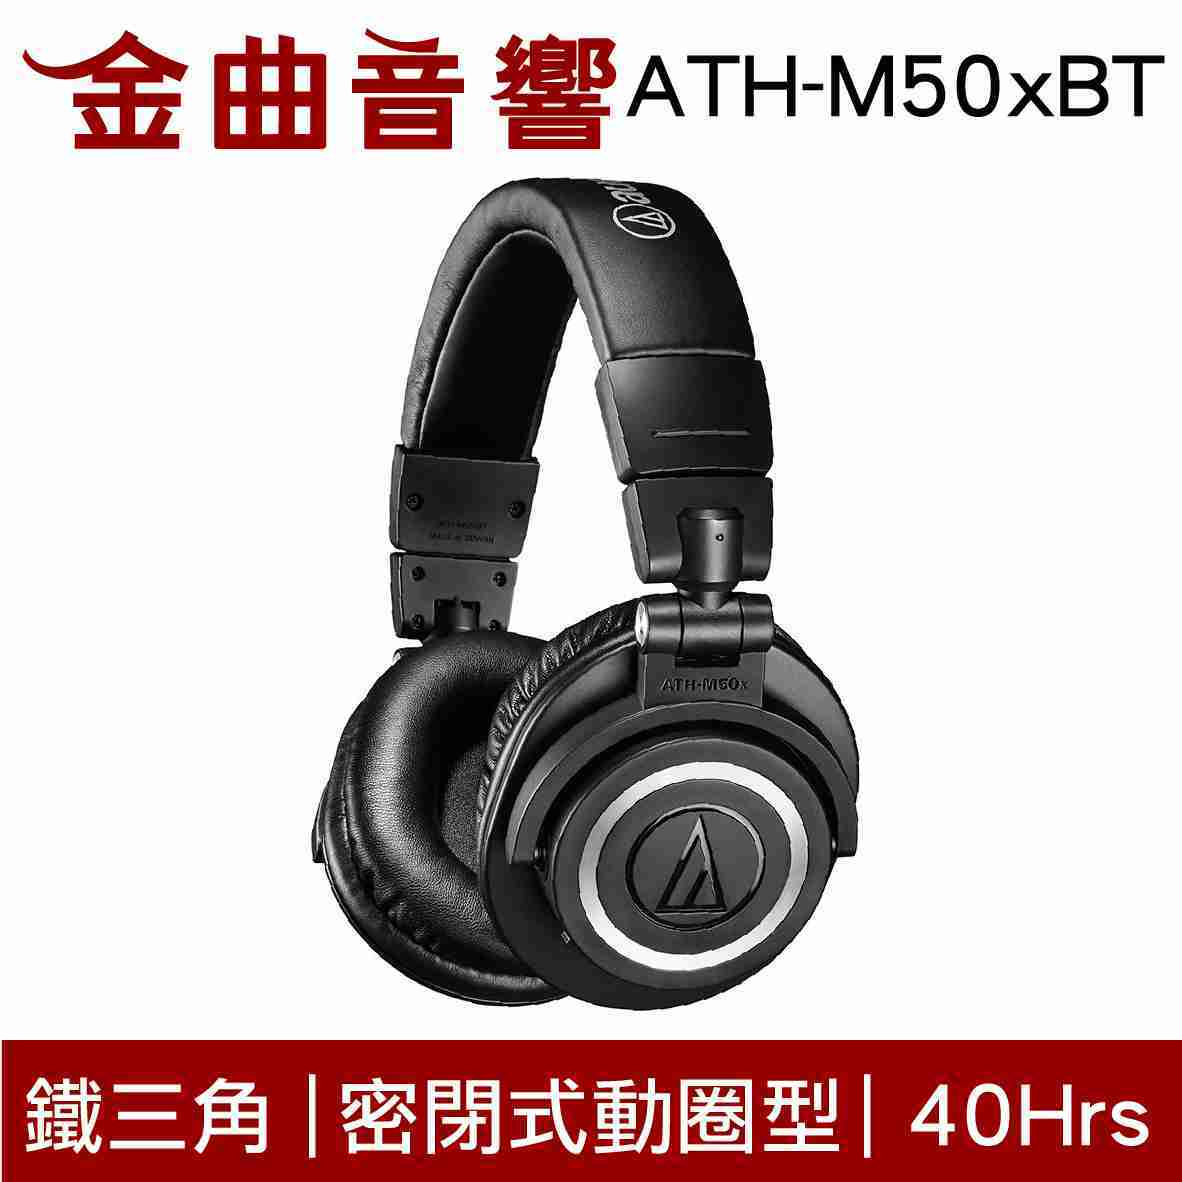 鐵三角 ATH-M50xBT 耳罩式 藍牙 耳機 藍牙5.0 m50xbt M50xBT PB | 金曲音響